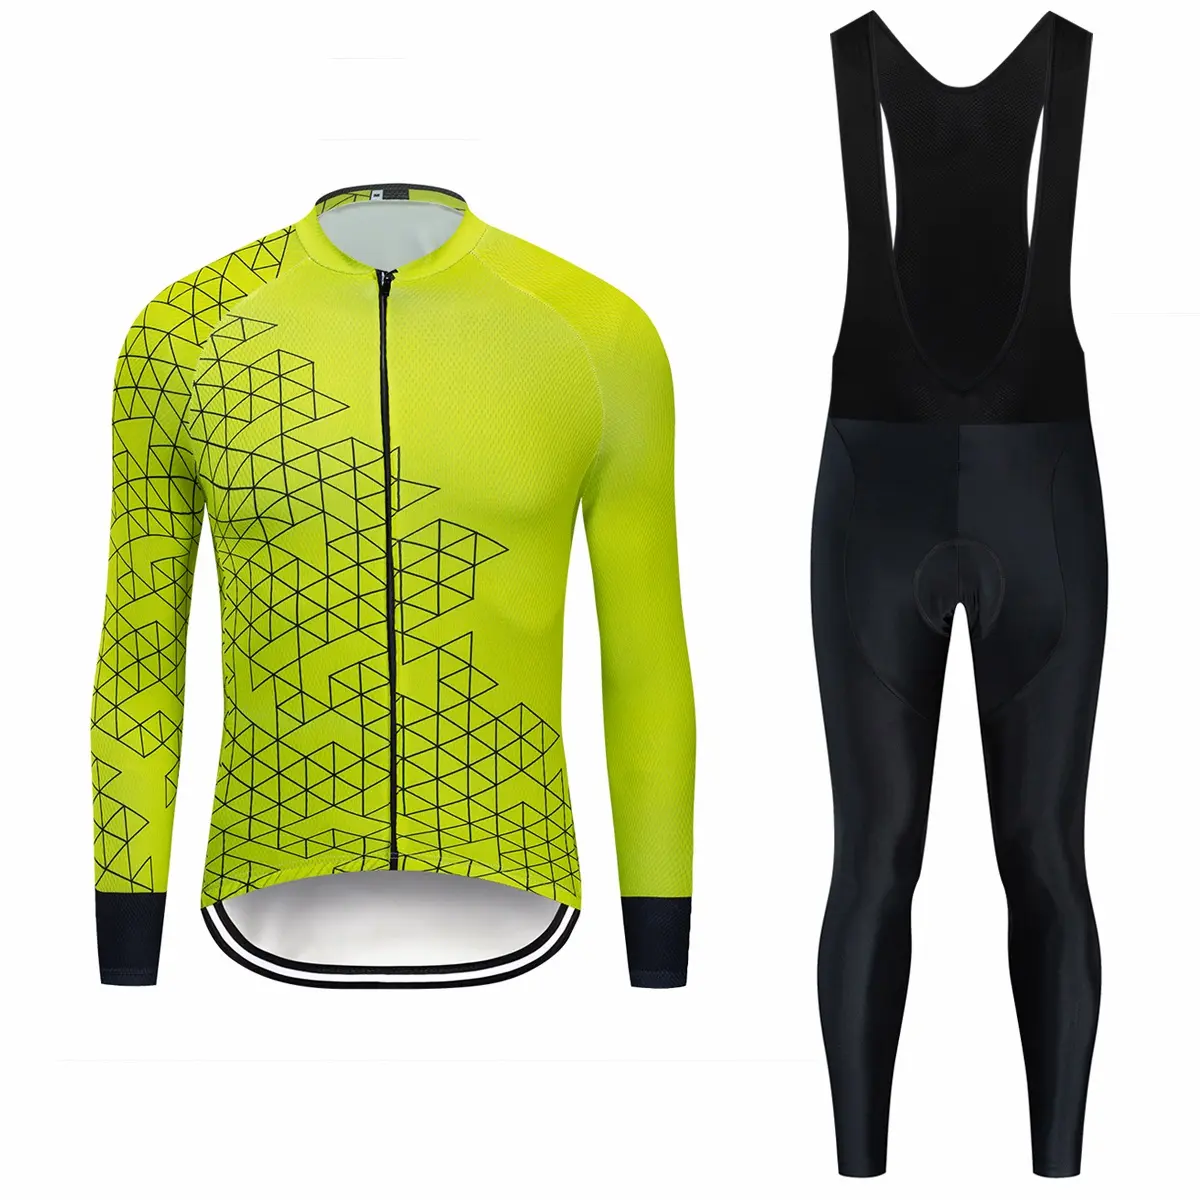 Vedo Radfahren Kleidung Dropshipping Kunden Sublimation Druck Polyester Fahrrad Jersey Langarm Radfahren Kleidung für Männer